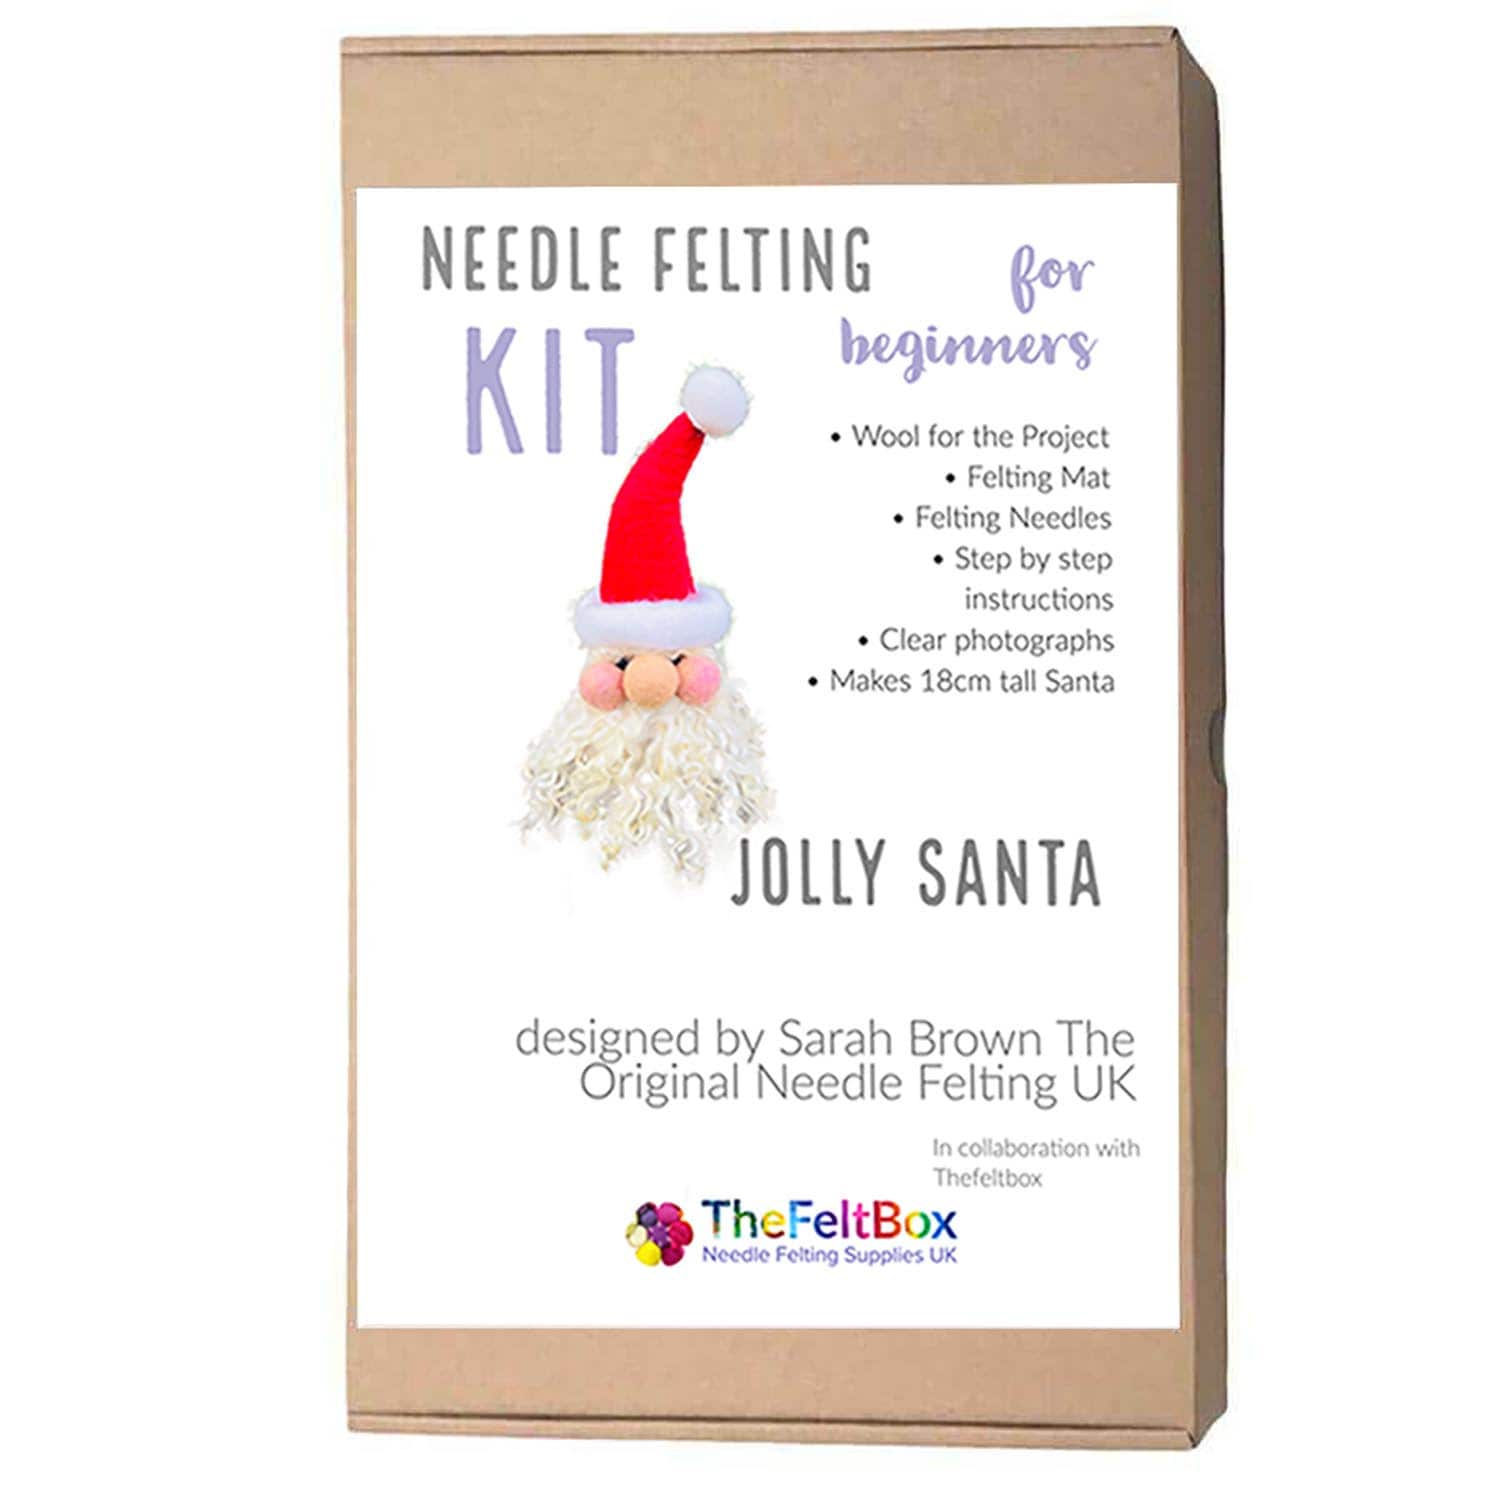 The Crafty Kit Company Needle Felting Kits - Yarn Folk